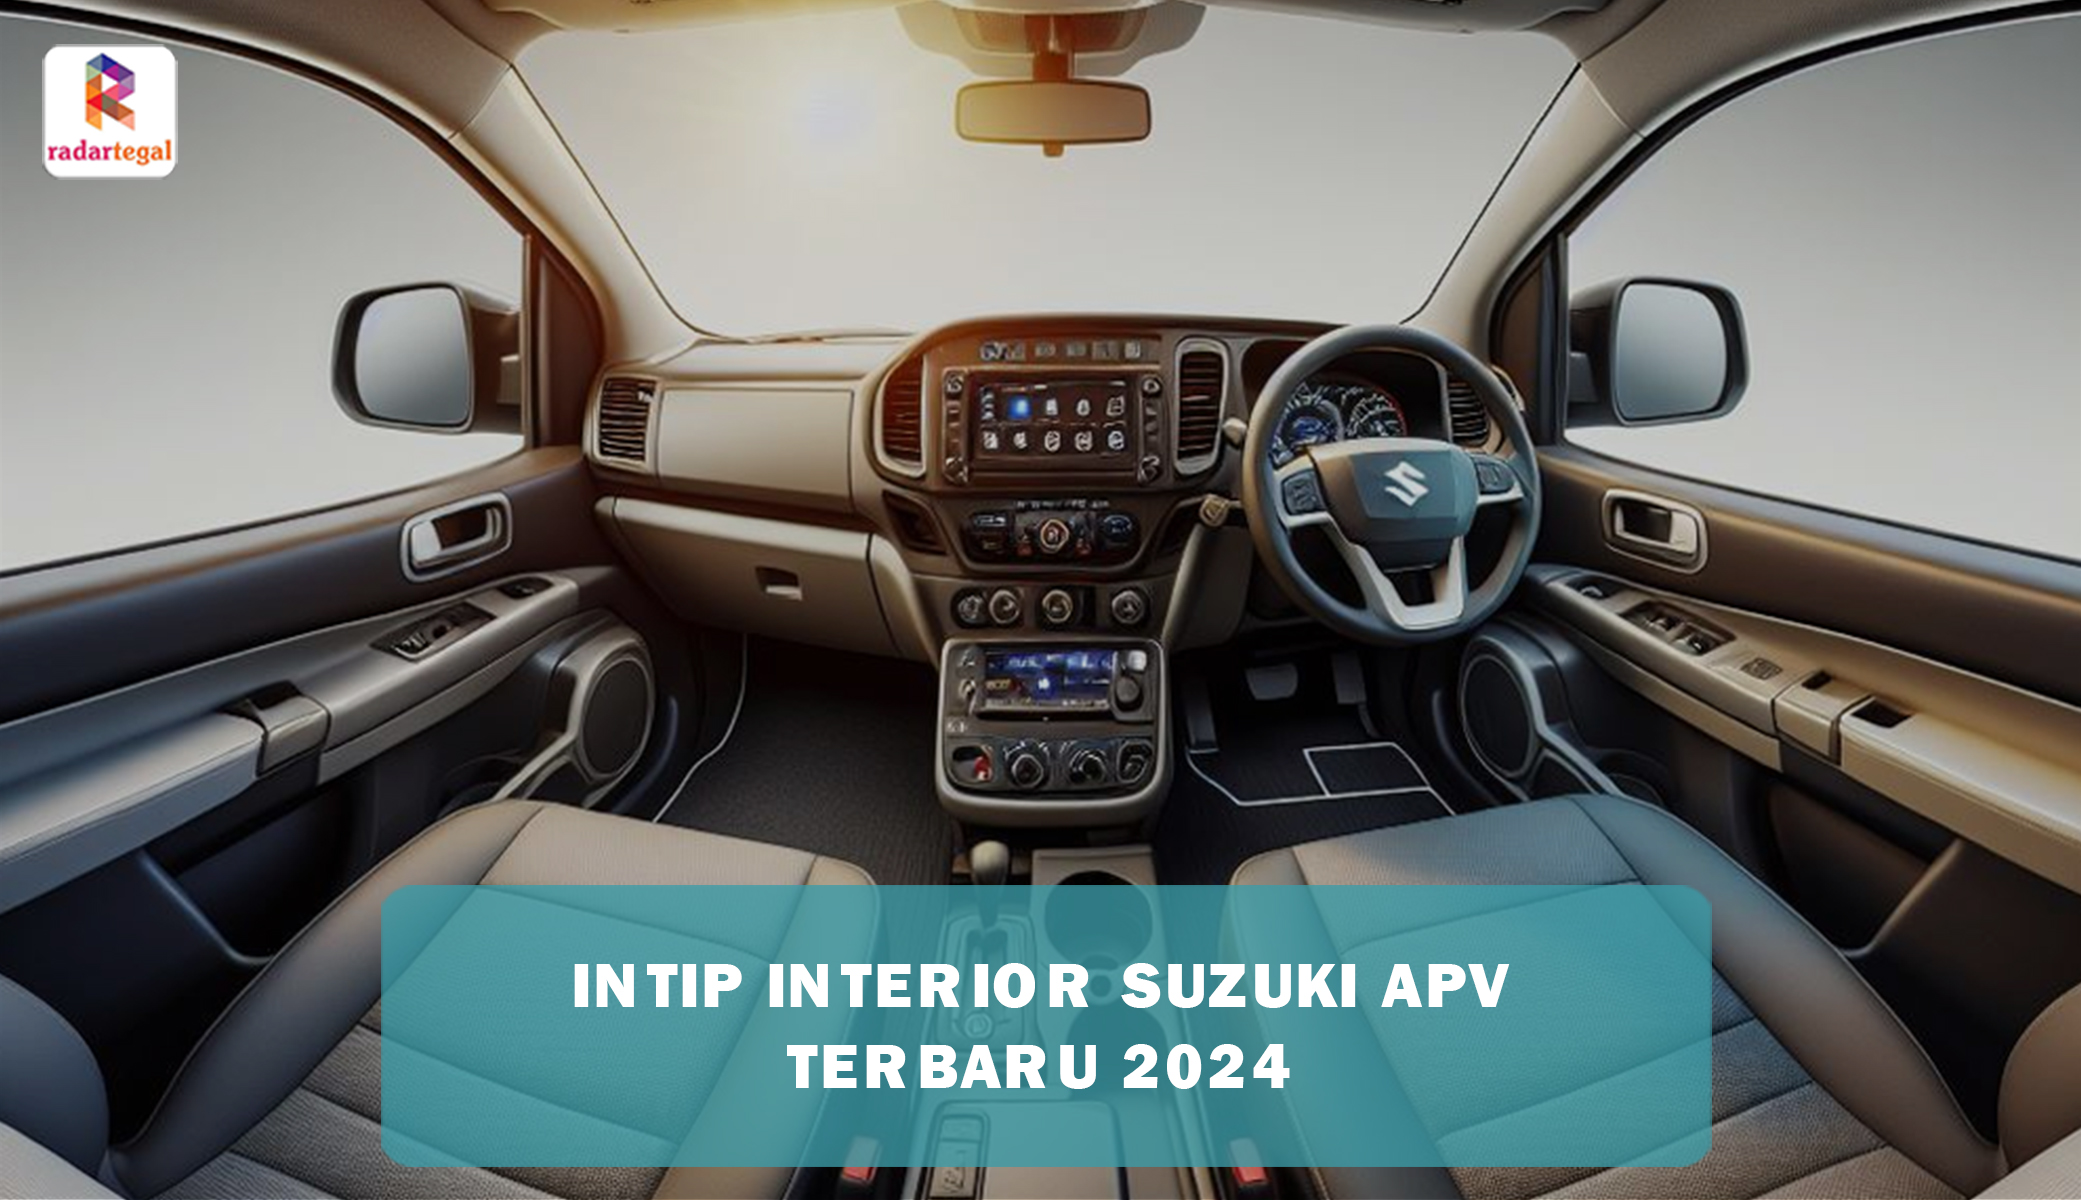 Suguhkan Kenyamanan Maximal, Interior Suzuki APV 2024 Gunakan Material Berkualitas Tinggi